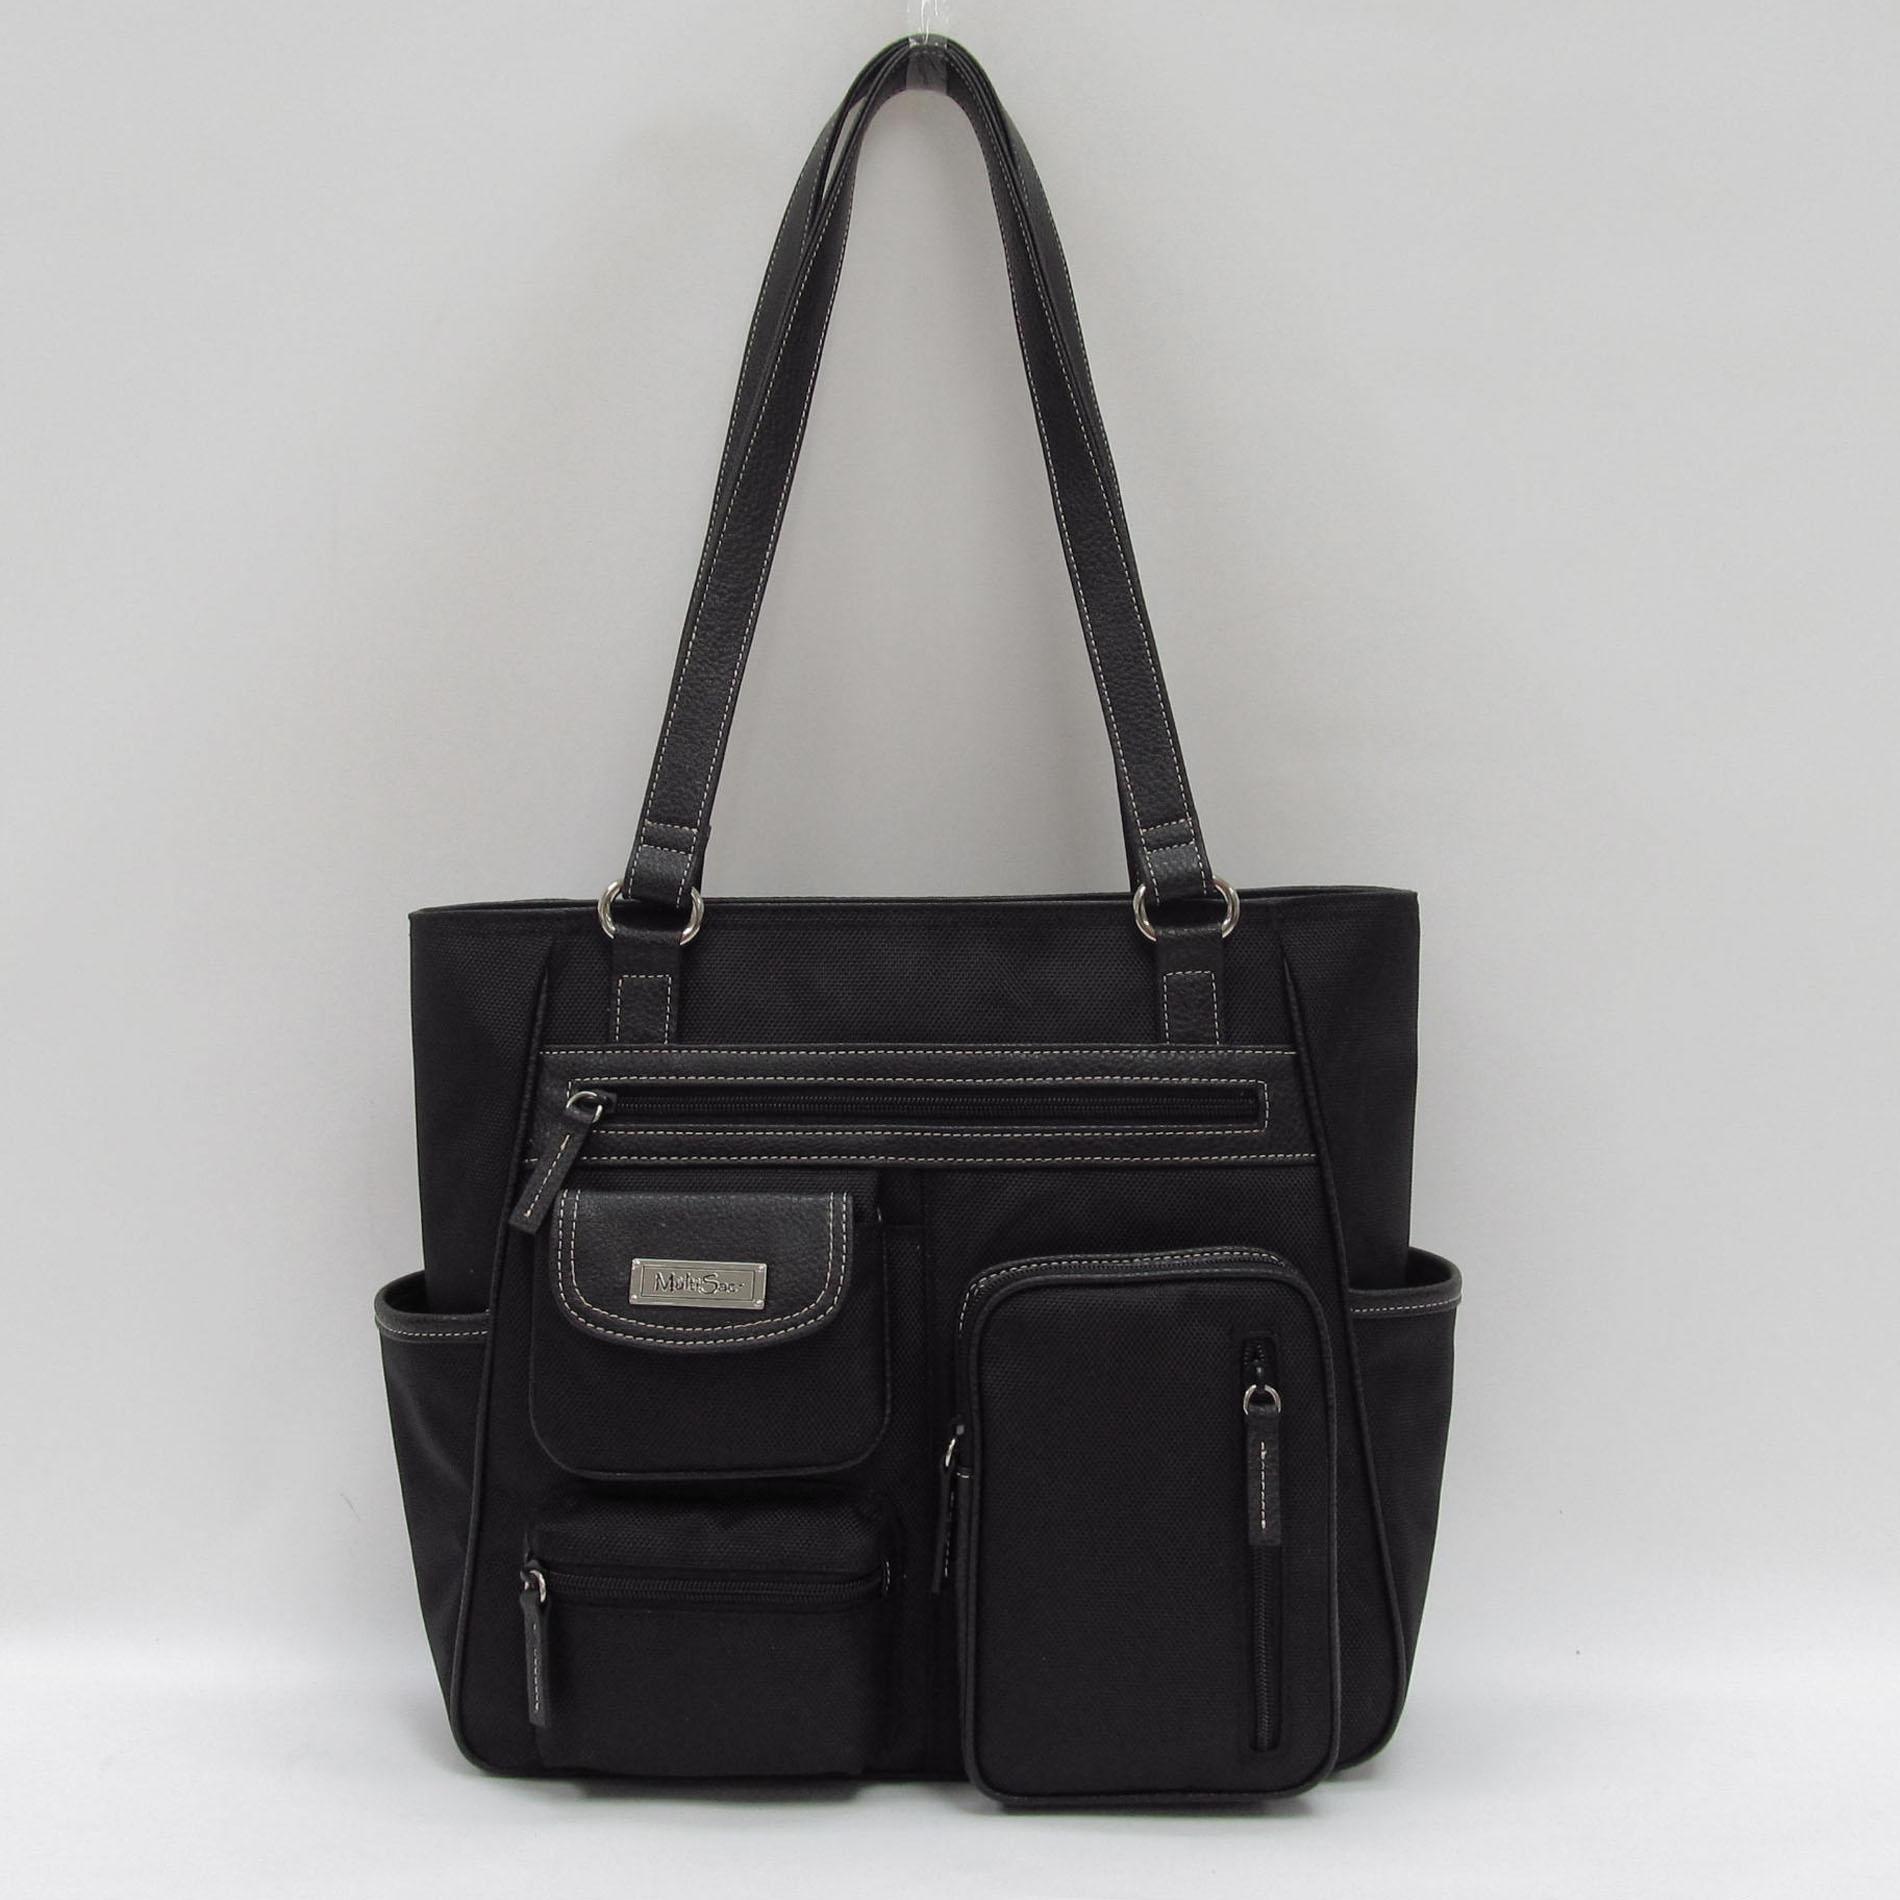 MultiSac Women's Ressa Shoulder Handbag